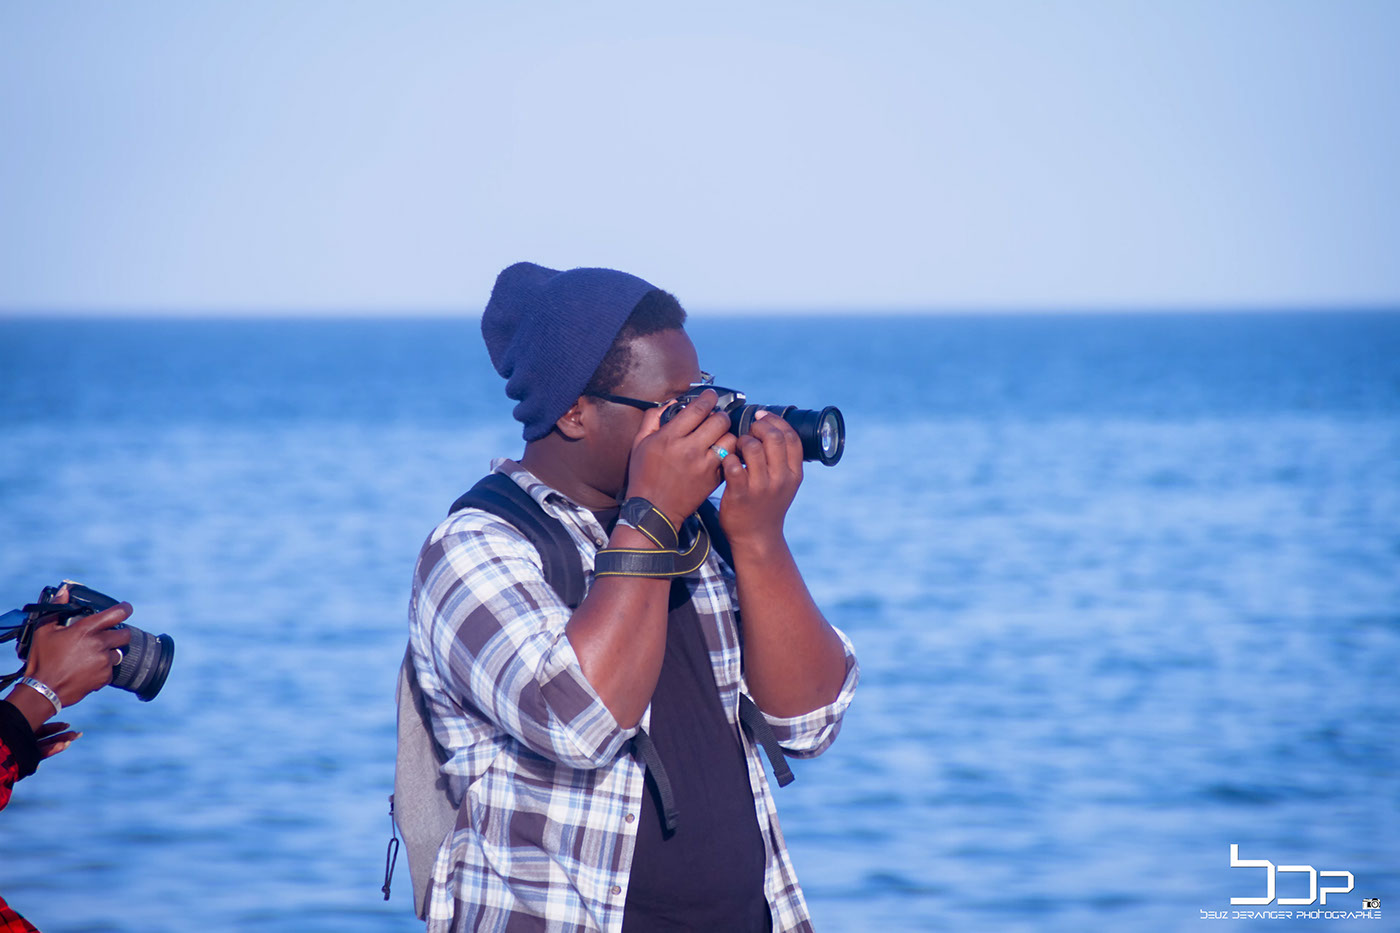 Photography  senegal art photographylover #photographiylover #PhotowalkSP#sunurando #rando #travel #voyage#ig_daily #ig_captures #ig_mood#moodygrams #igs_photos#chasinglight #shotaward#communityfirst #lifestyle #socality#uwezoafrique #huntgram#liveauthentic #letsgosomewhere#senegal #travel #samadiwane#lifestyle